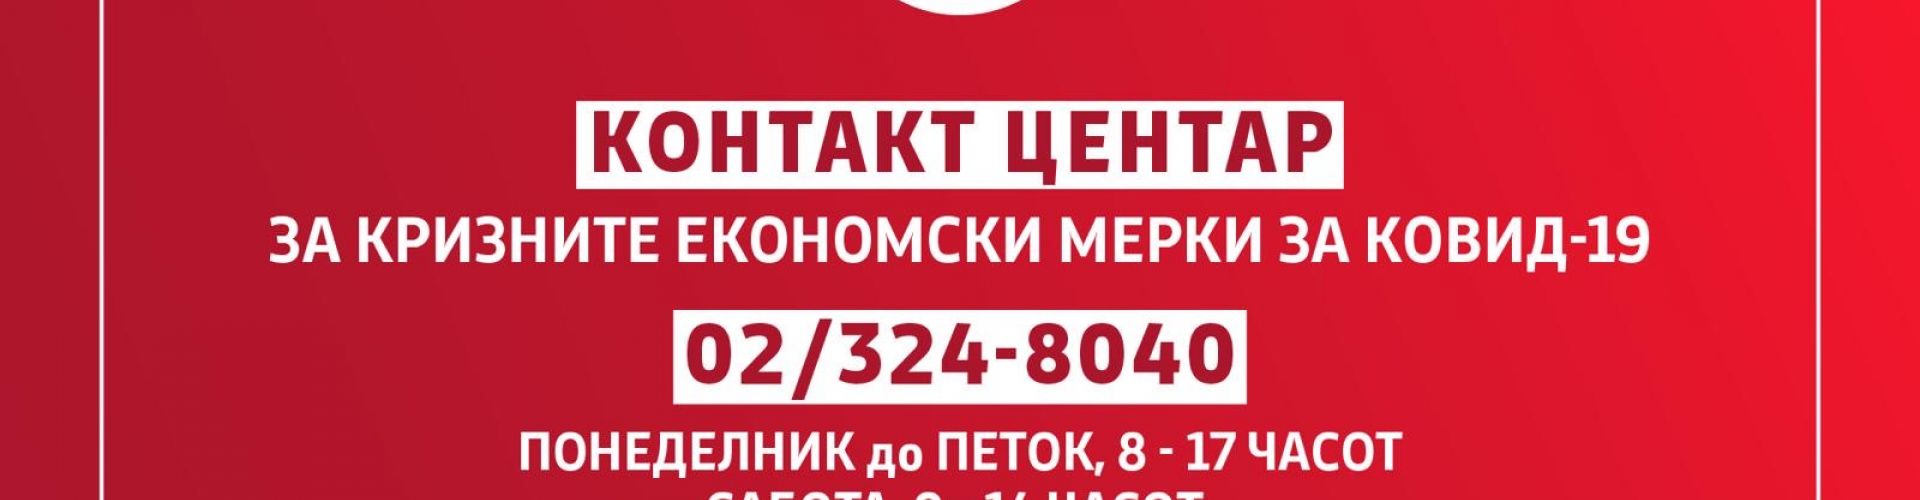 Влада: 1.579 јавувања за една недела во контакт центарот за економските мерки